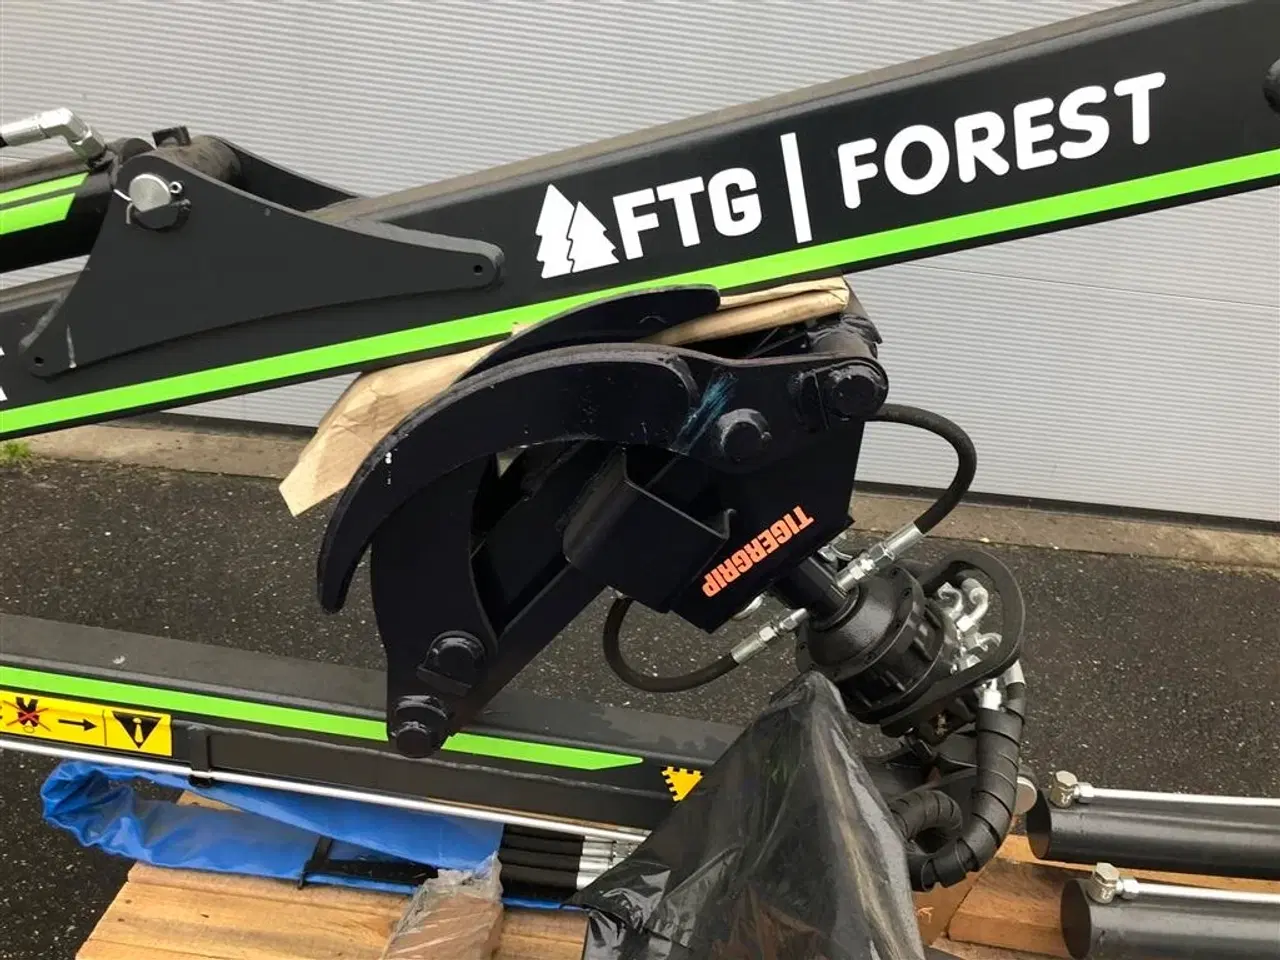 Billede 2 - FTG Forest 5,3 M Stærk kran til konkurrencedygtig pris